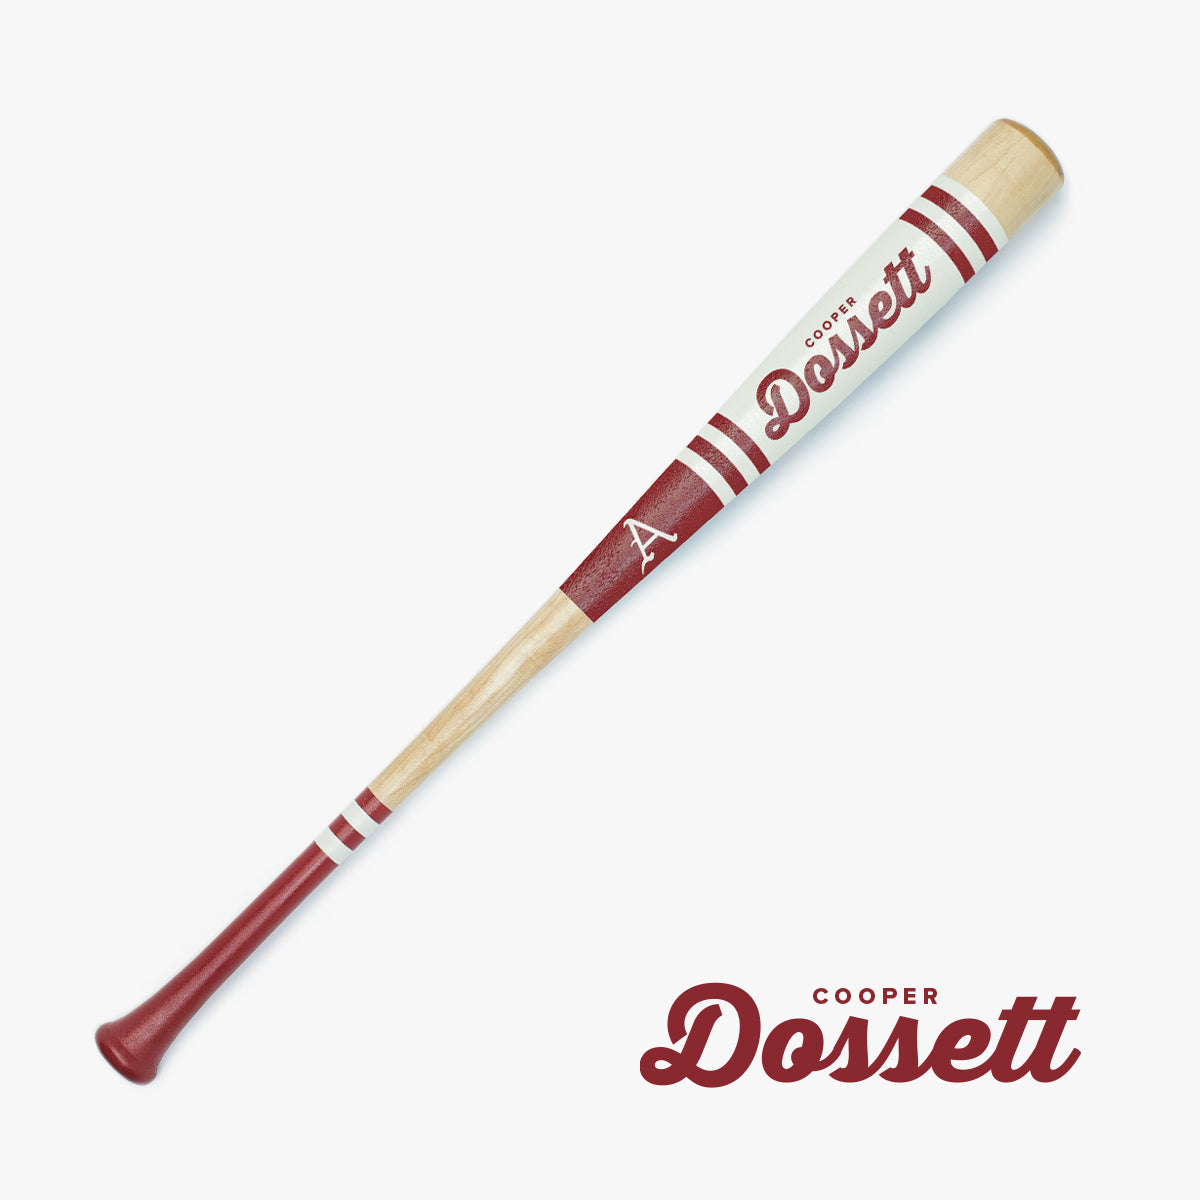 Cooper Dossett University of Arkansas Baseball